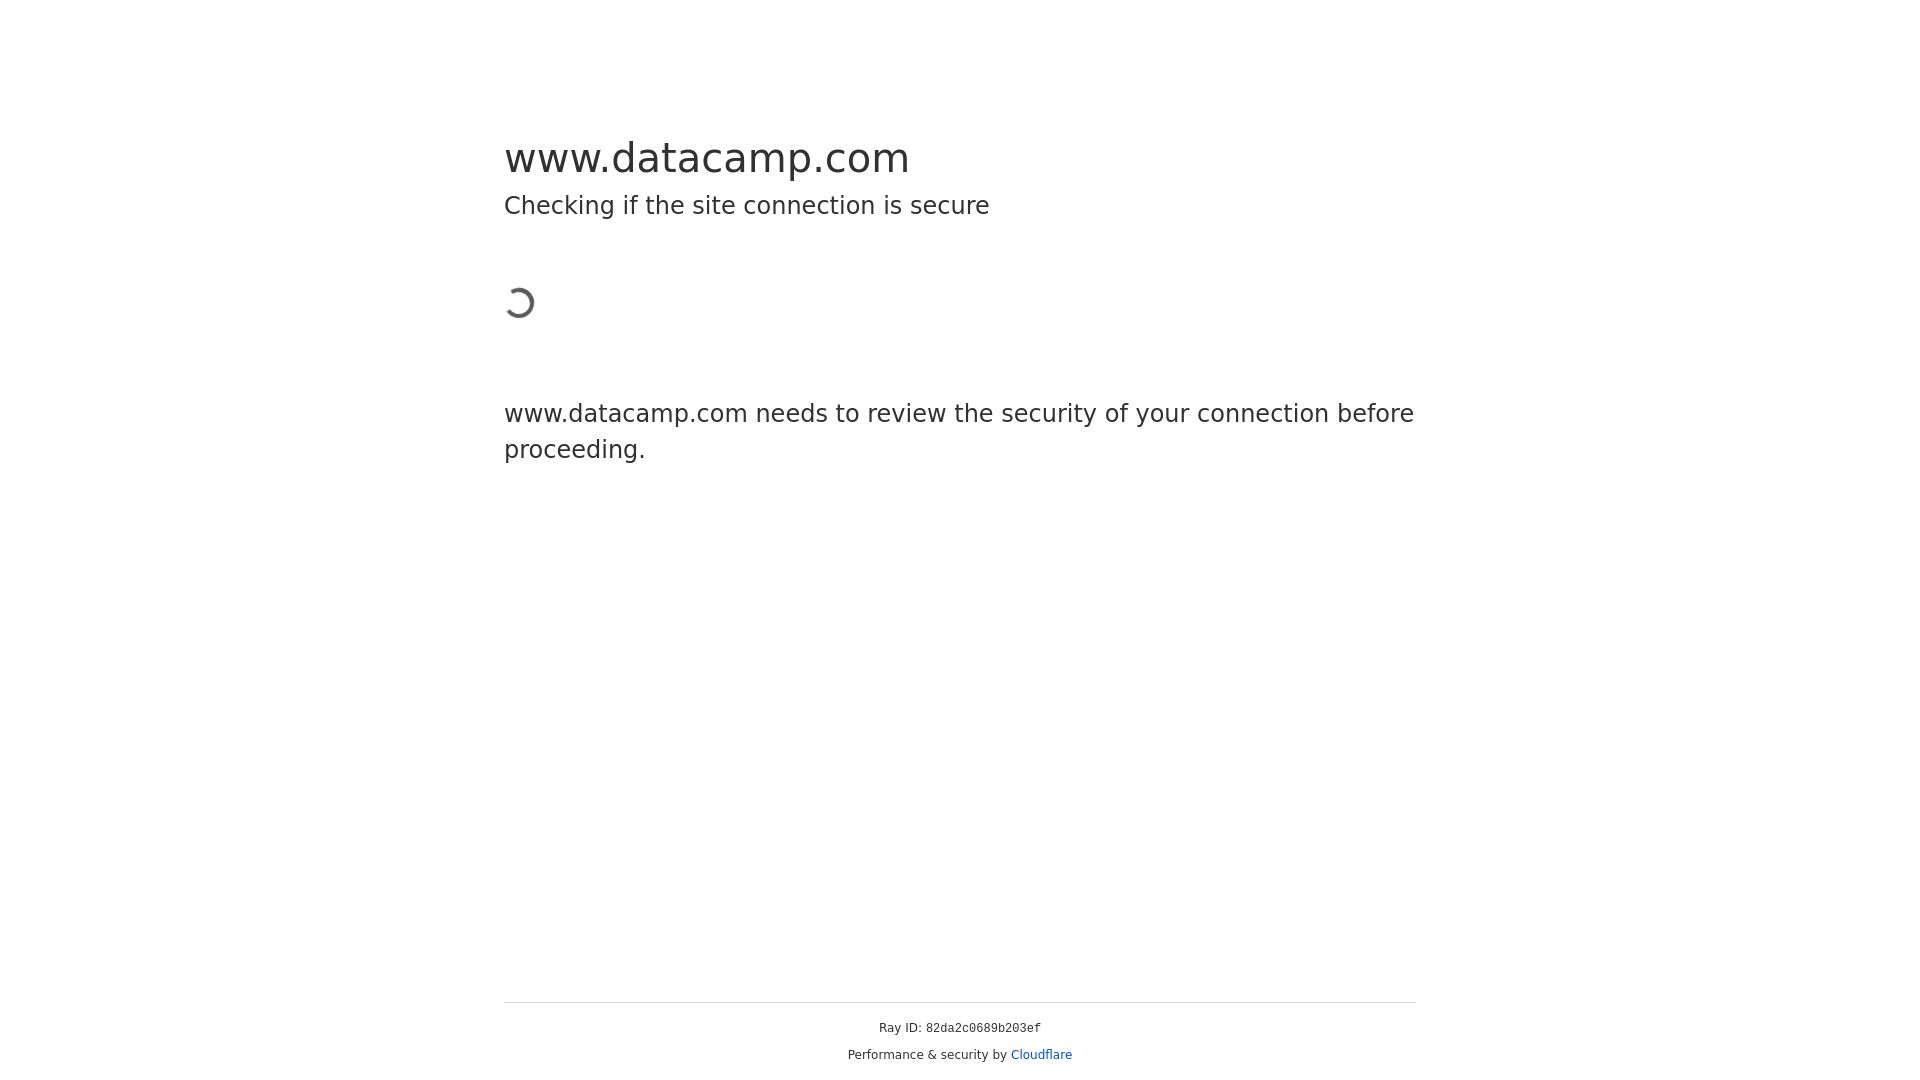 État du site web datacamp.com est   EN LIGNE